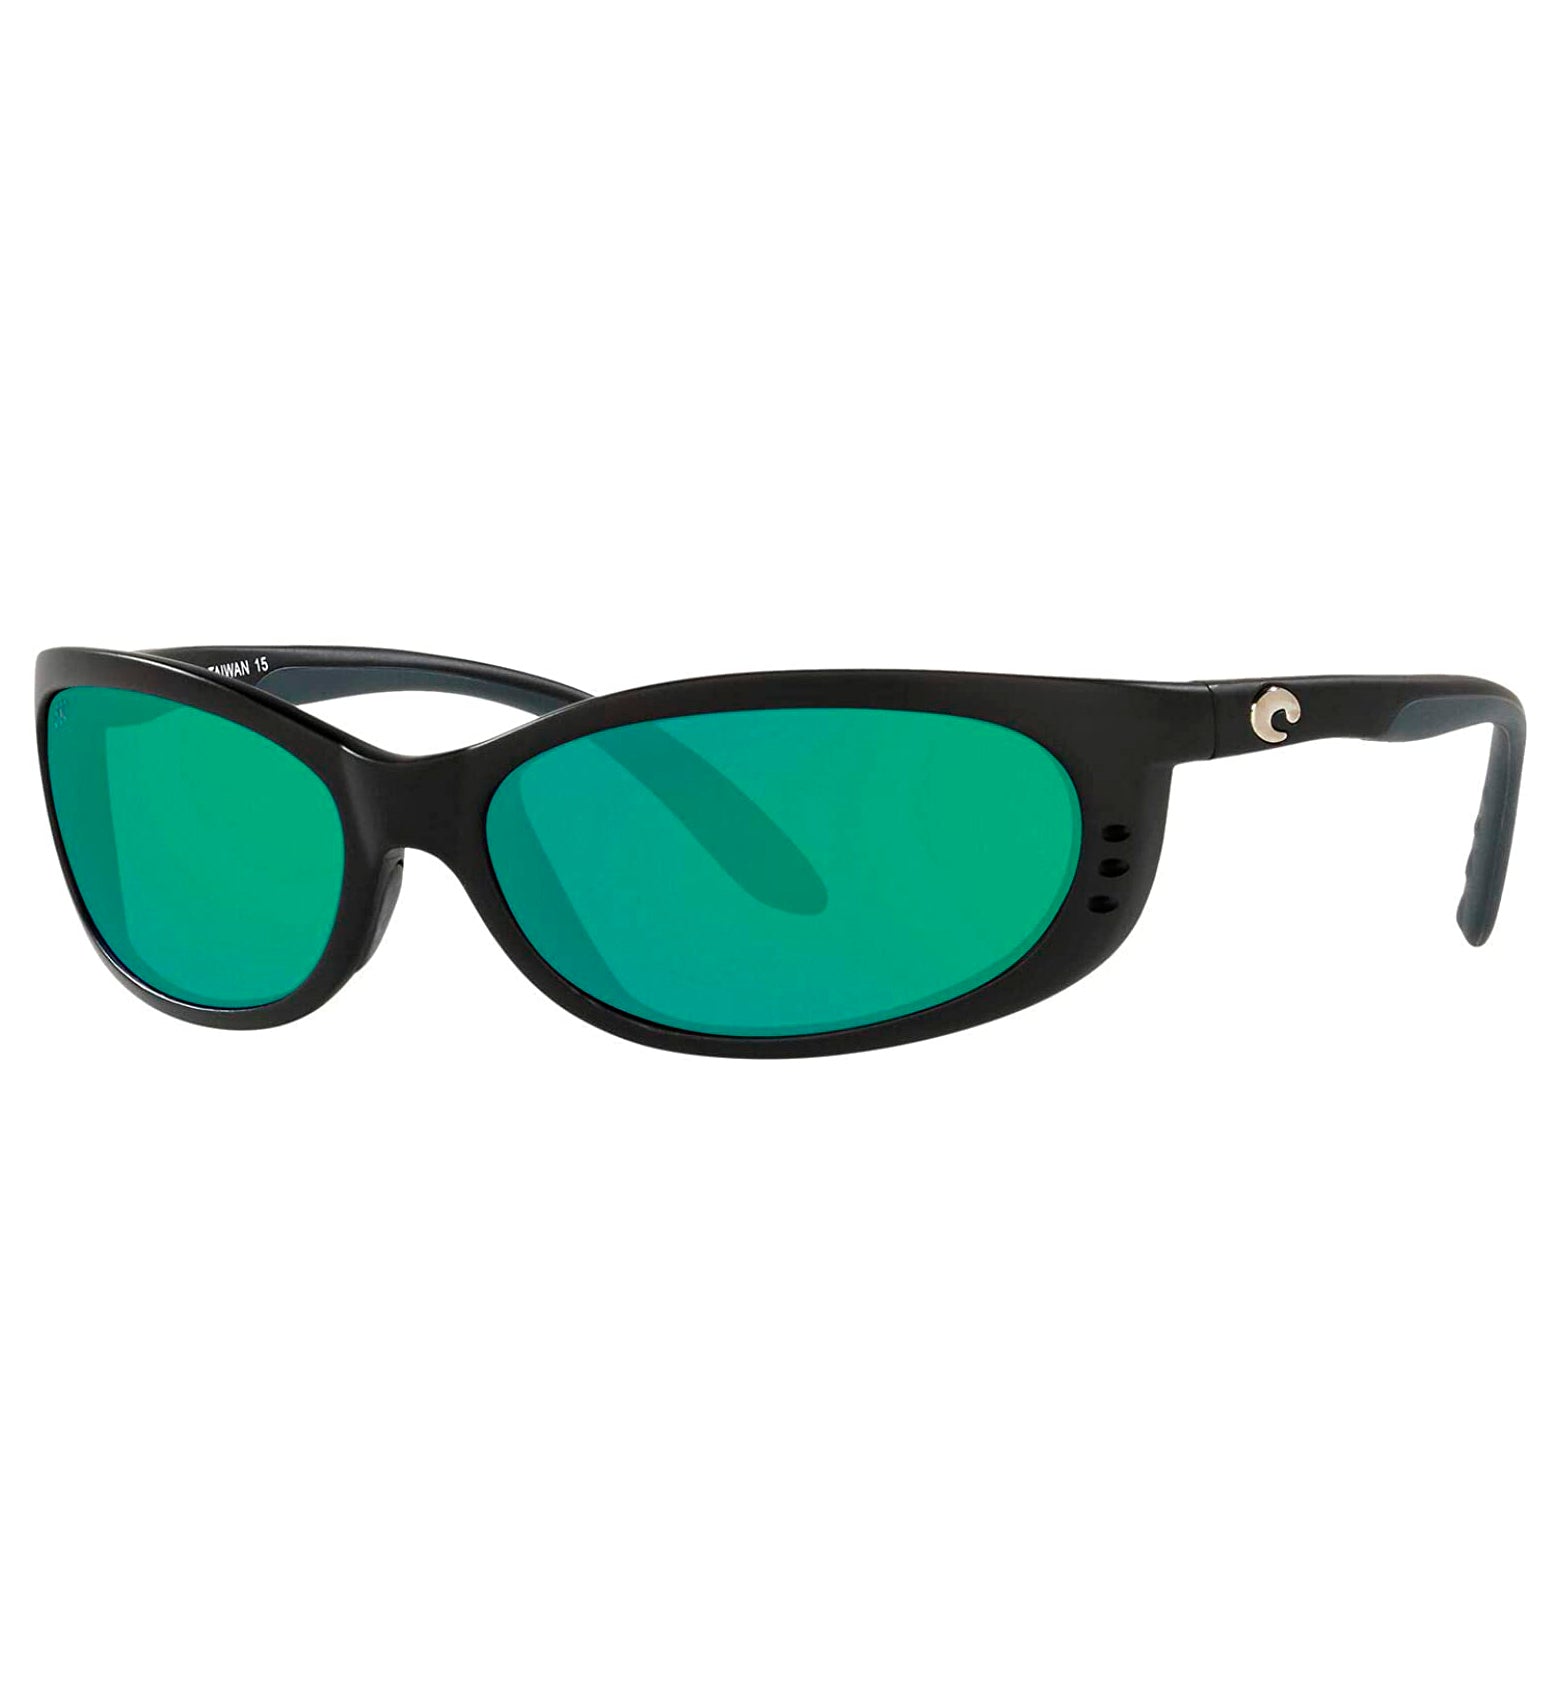 Costa Del Mar Fathom Sunglasses MatteBlack GreenMirror 580G